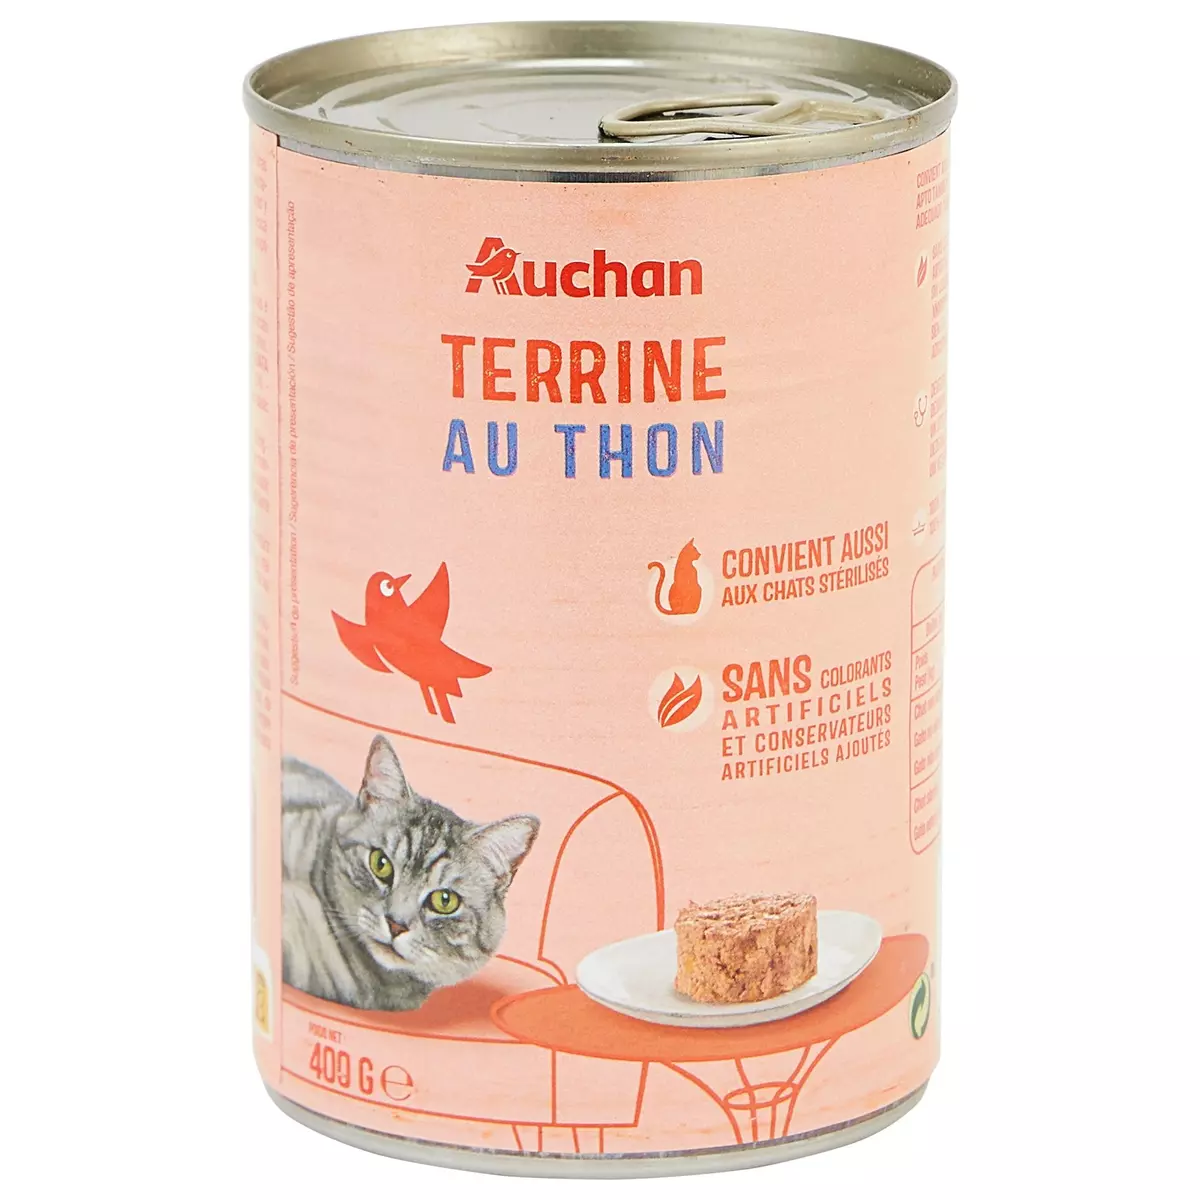 AUCHAN Terrine au thon pour chats et chats stérilisés 400g